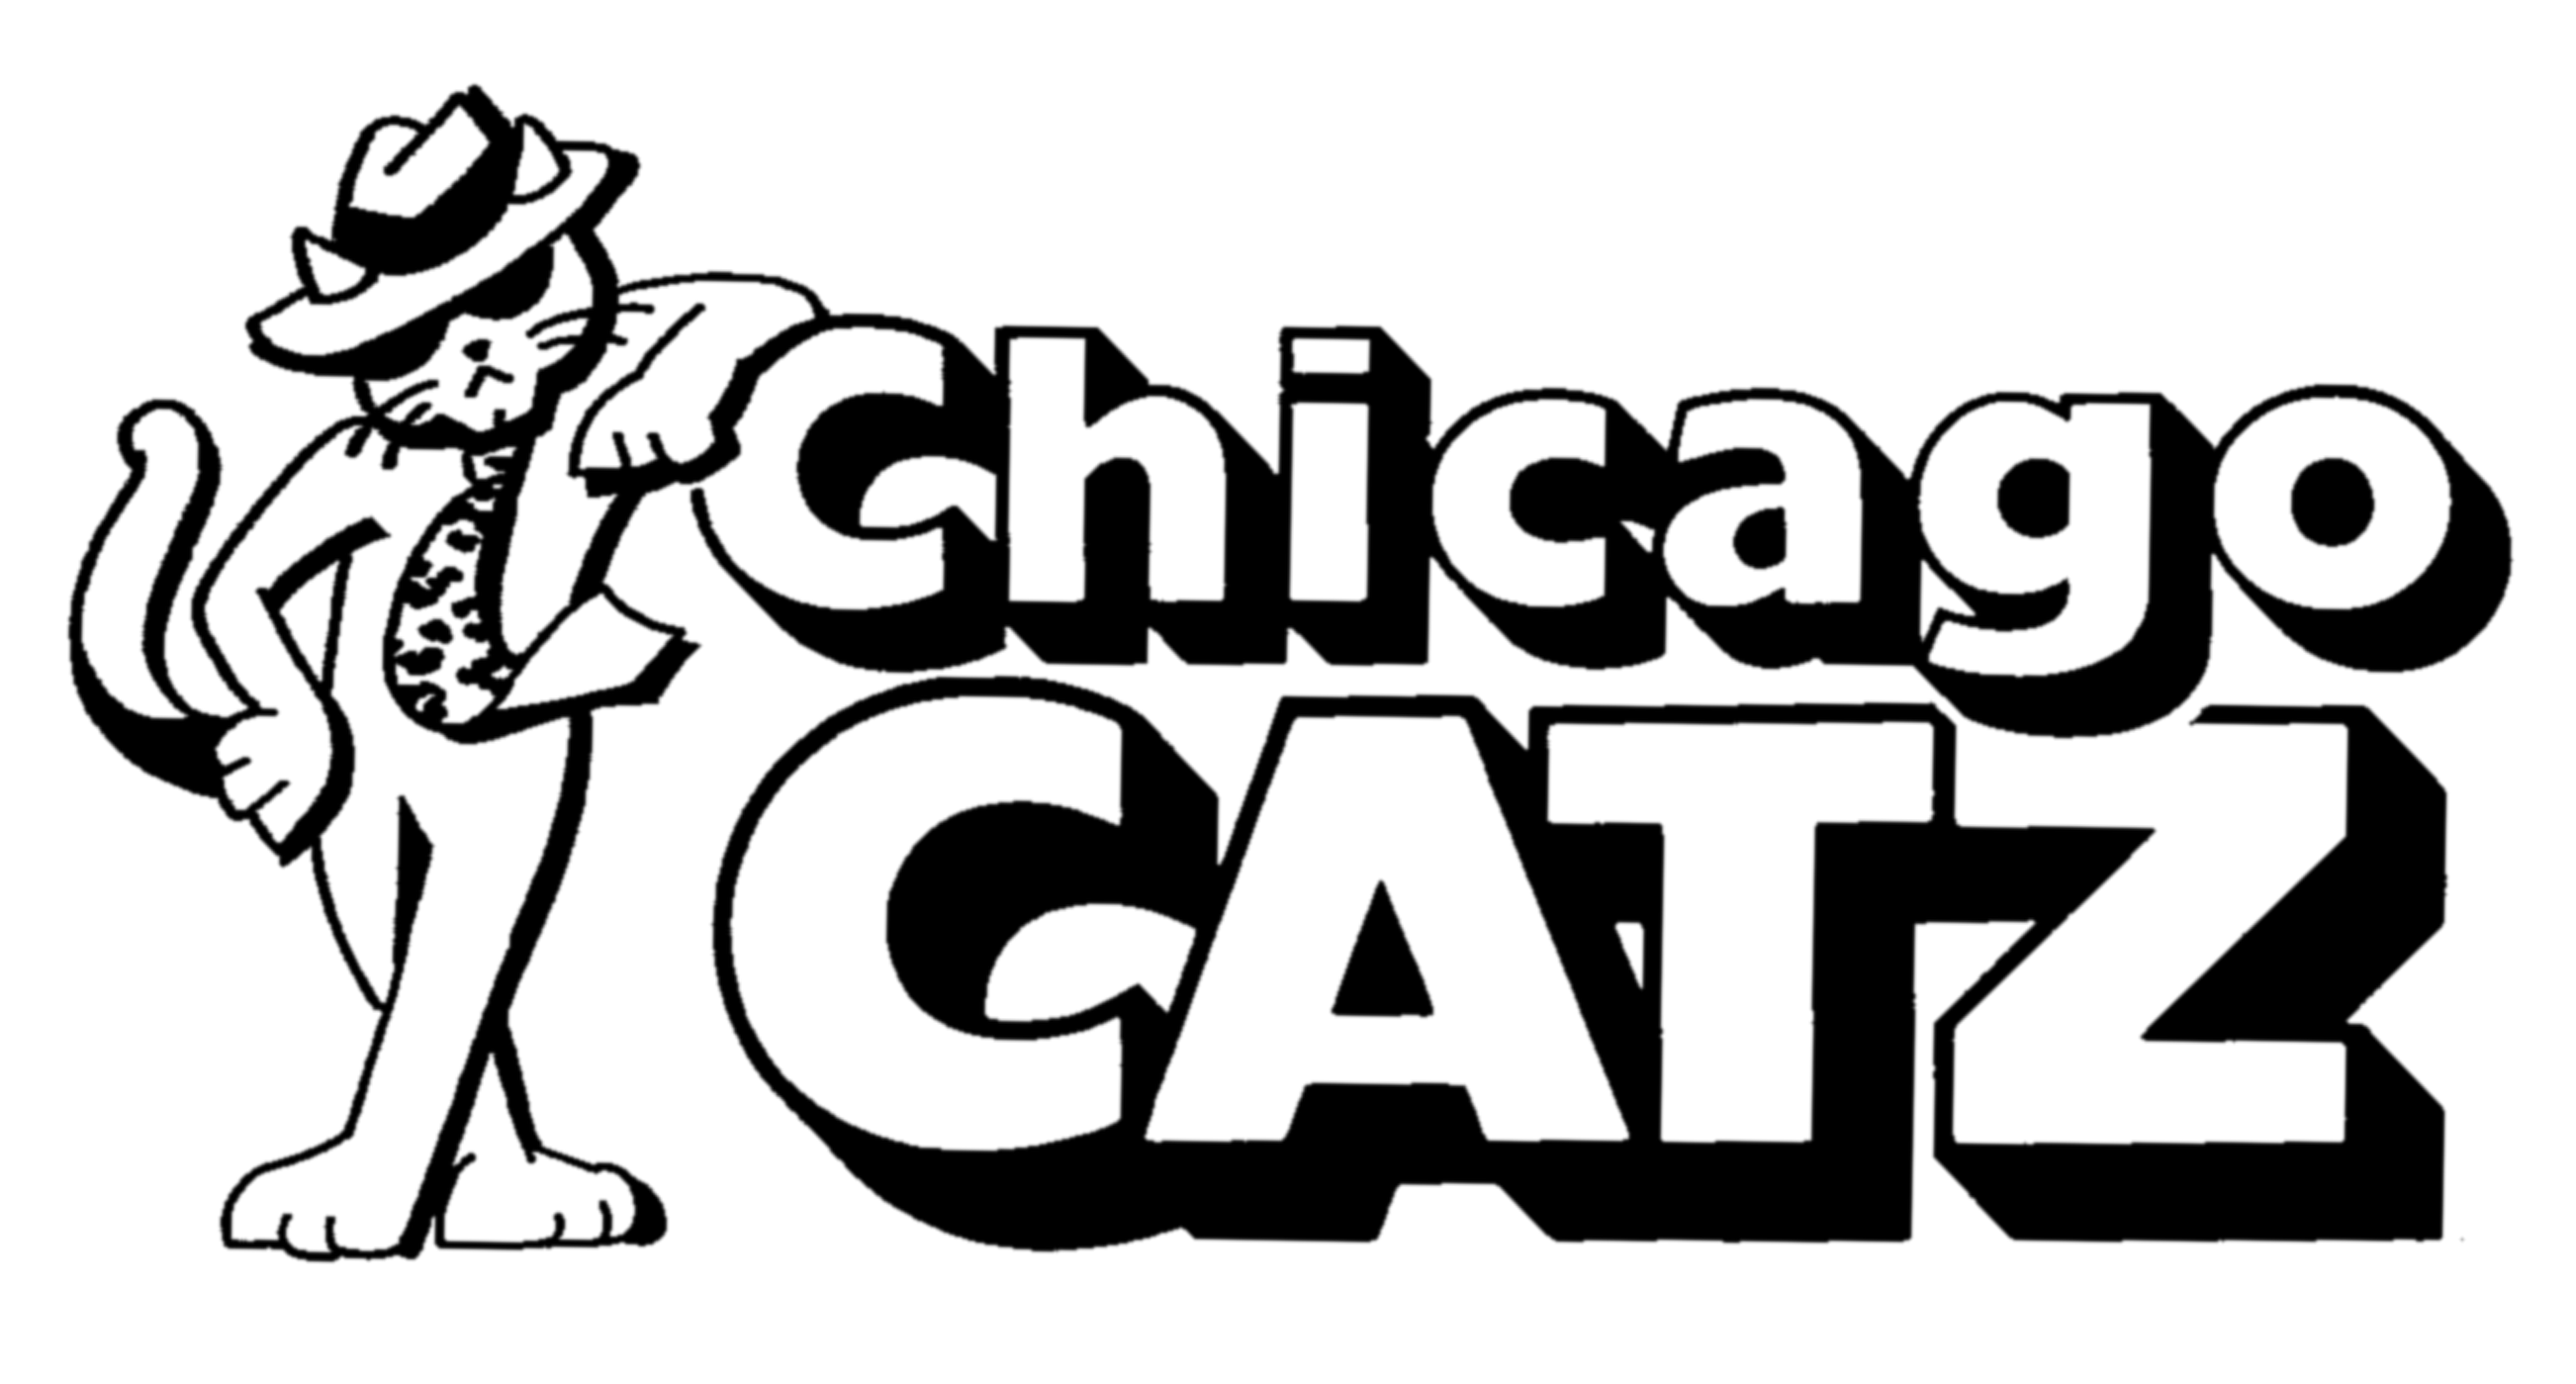 Chicago Catz